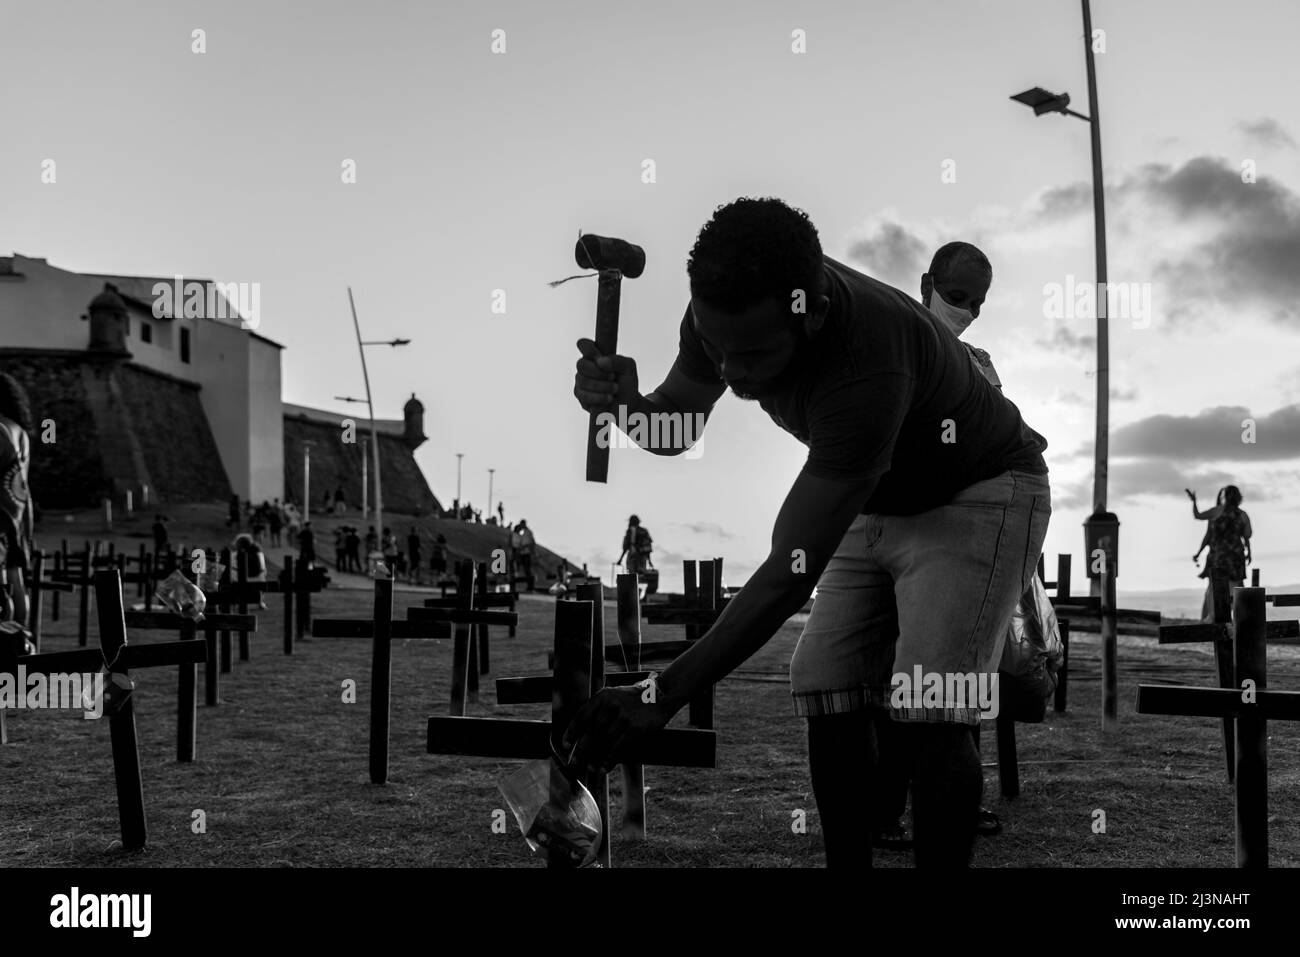 Salvador, Bahia, Brésil - 01 octobre 2021 : silhouette d'un homme fixant des croix sur le sol en l'honneur de ceux tués par le covid-19.Phare de Barra, S Banque D'Images